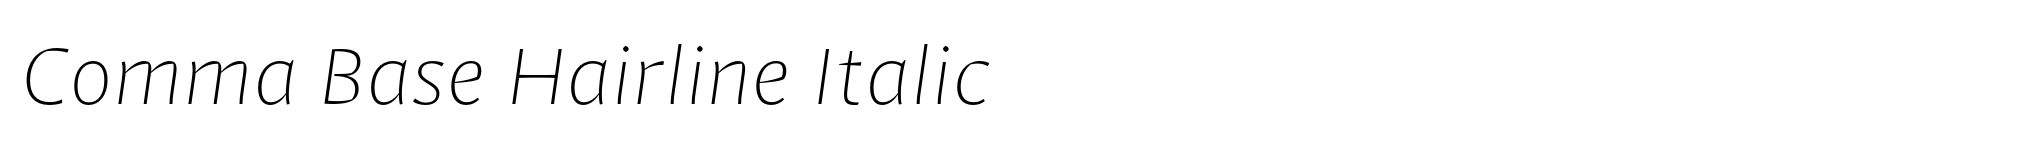 Comma Base Hairline Italic image